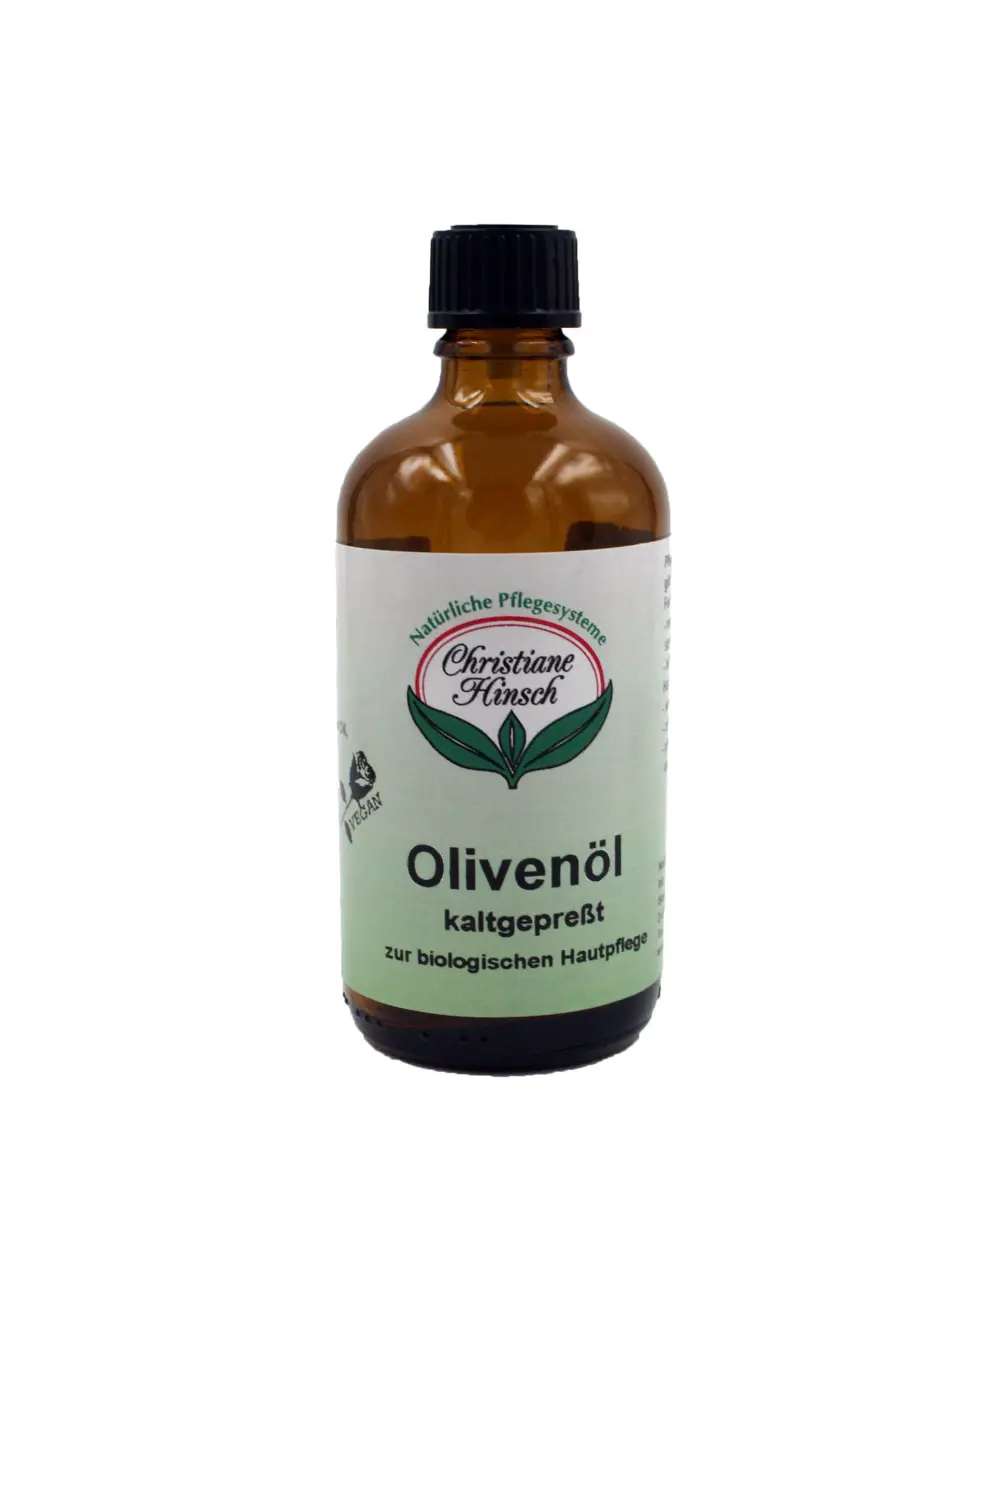 Natürliche Pflegesysteme Christiane Hinsch Olivenöl kaltgepresst